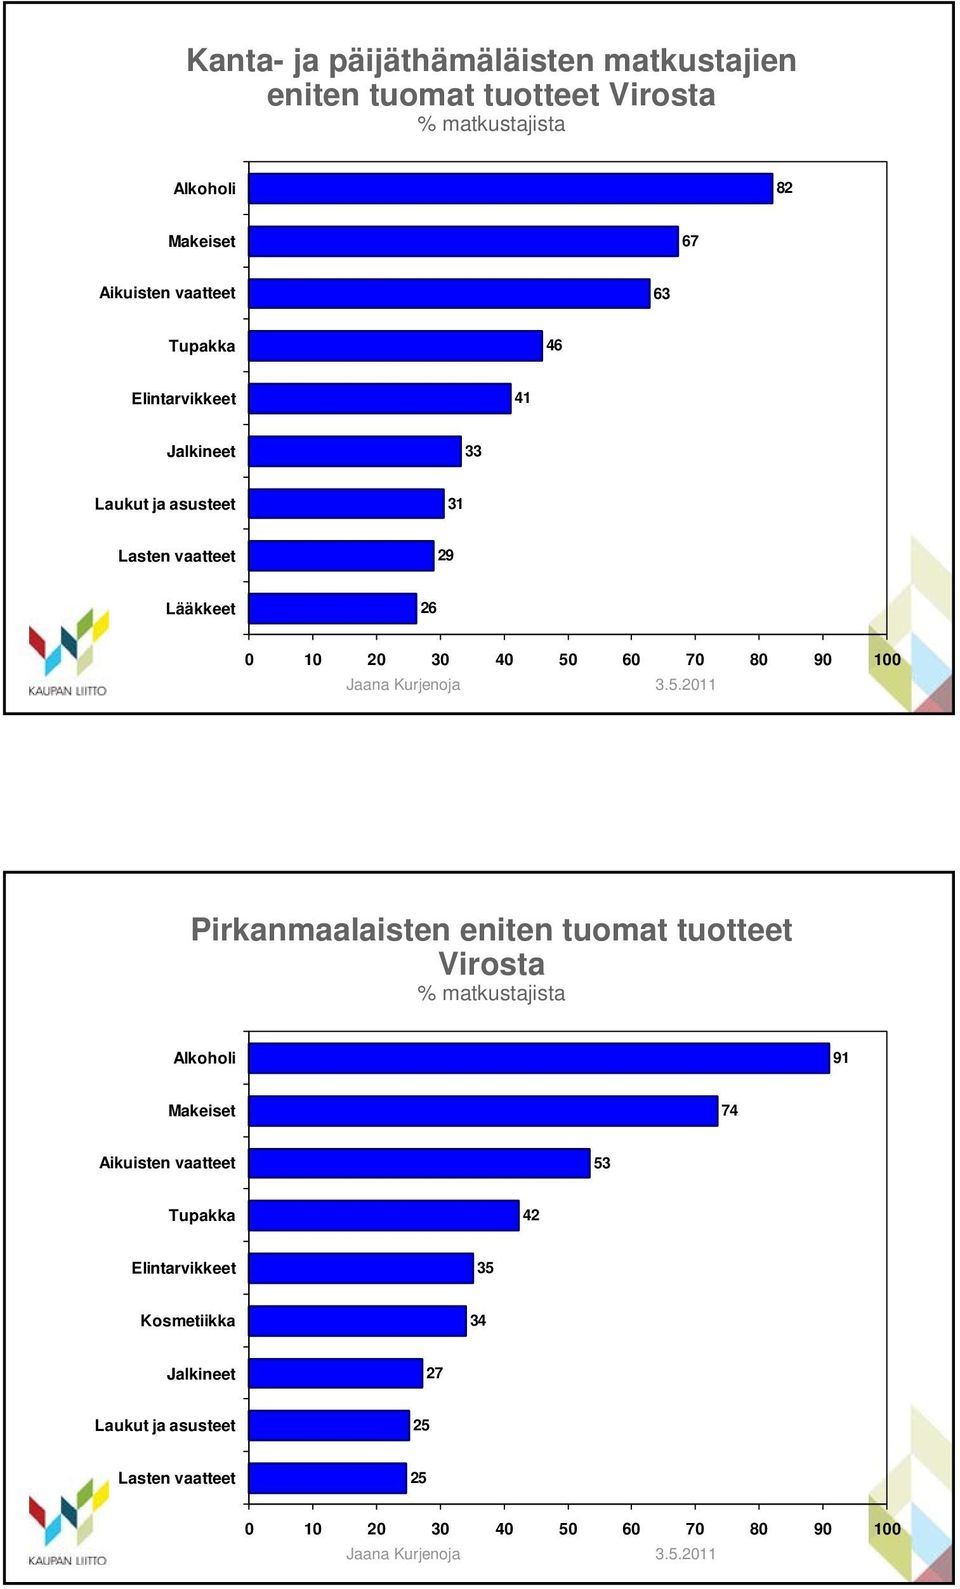 29 Lääkkeet 26 Pirkanmaalaisten eniten tuomat tuotteet Virosta Alkoholi 91 Makeiset 74 Aikuisten